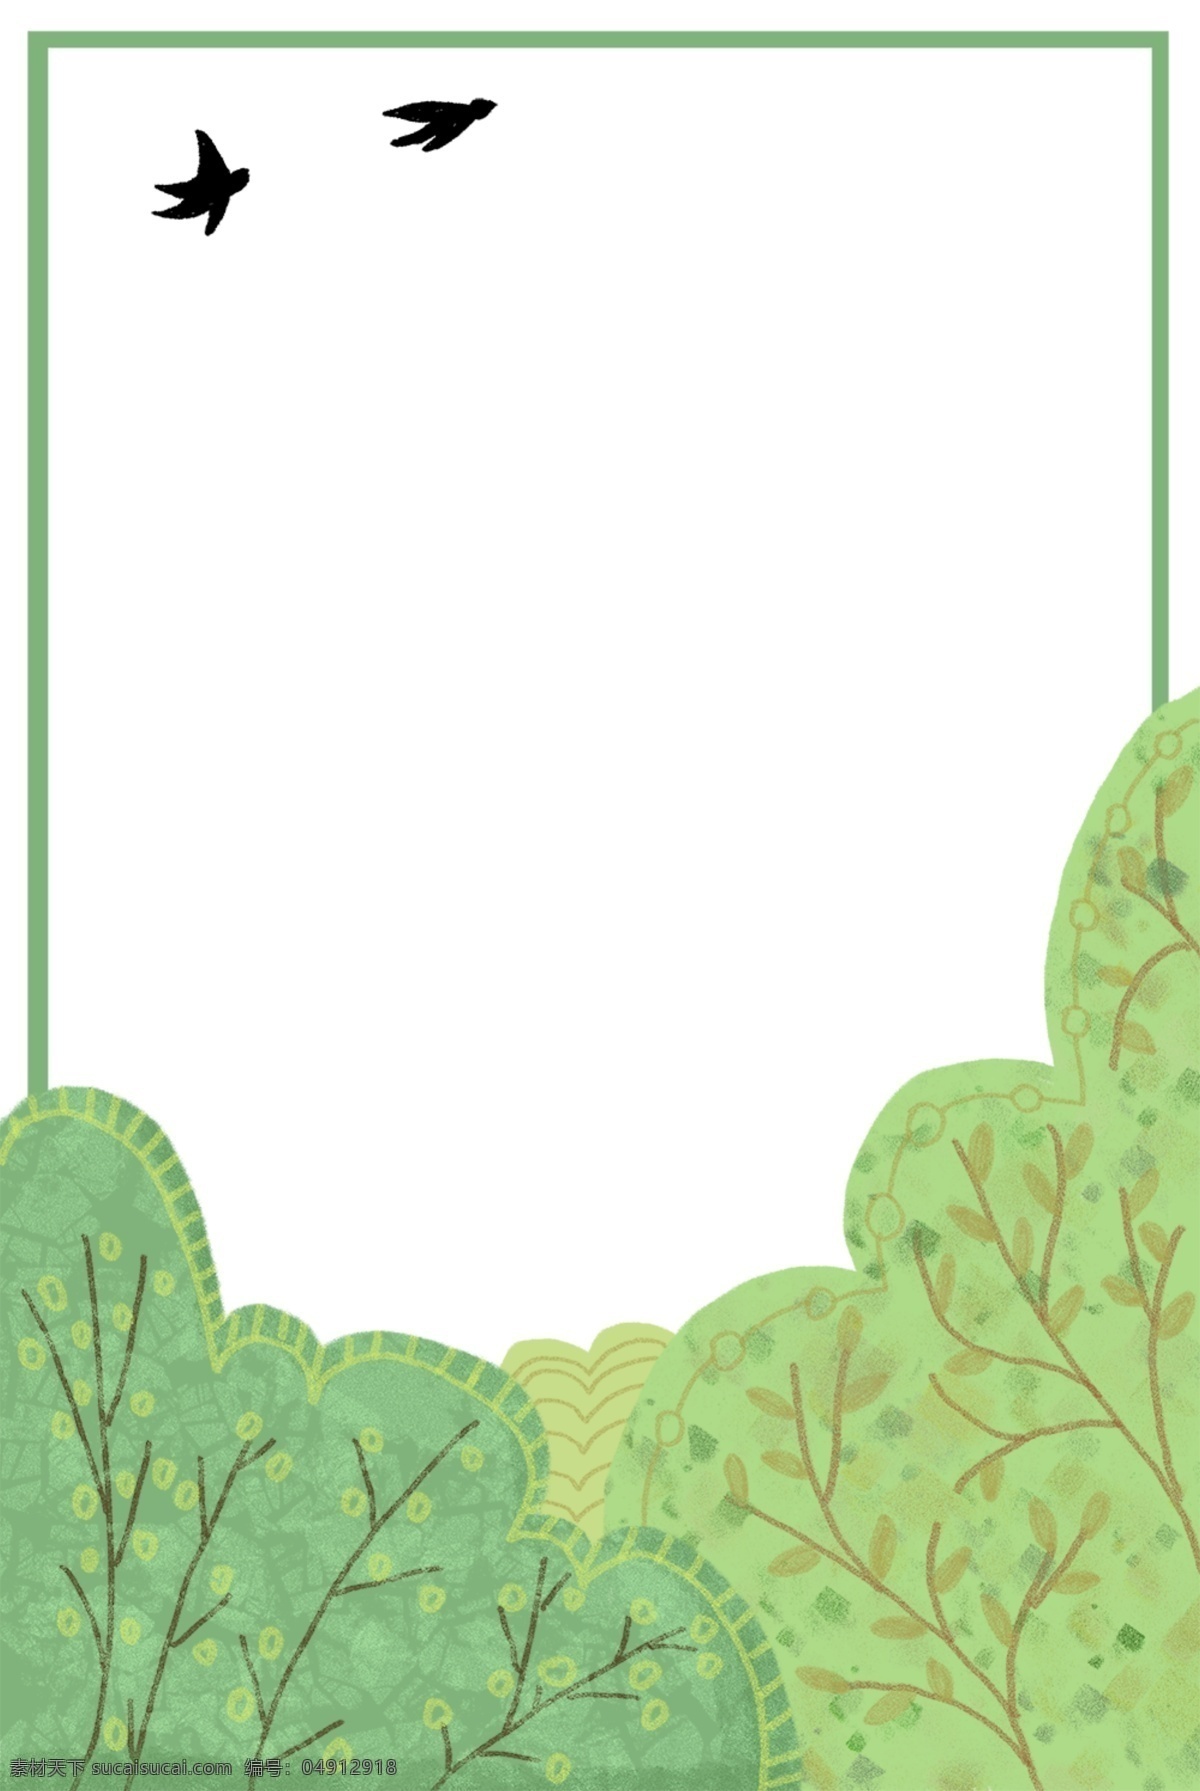 树木 装饰 绿色 主题 边框 手绘 卡通 海报插画 精美插画 广告插画 小清新 简约 图案装饰设计 树木装饰 绿色主题